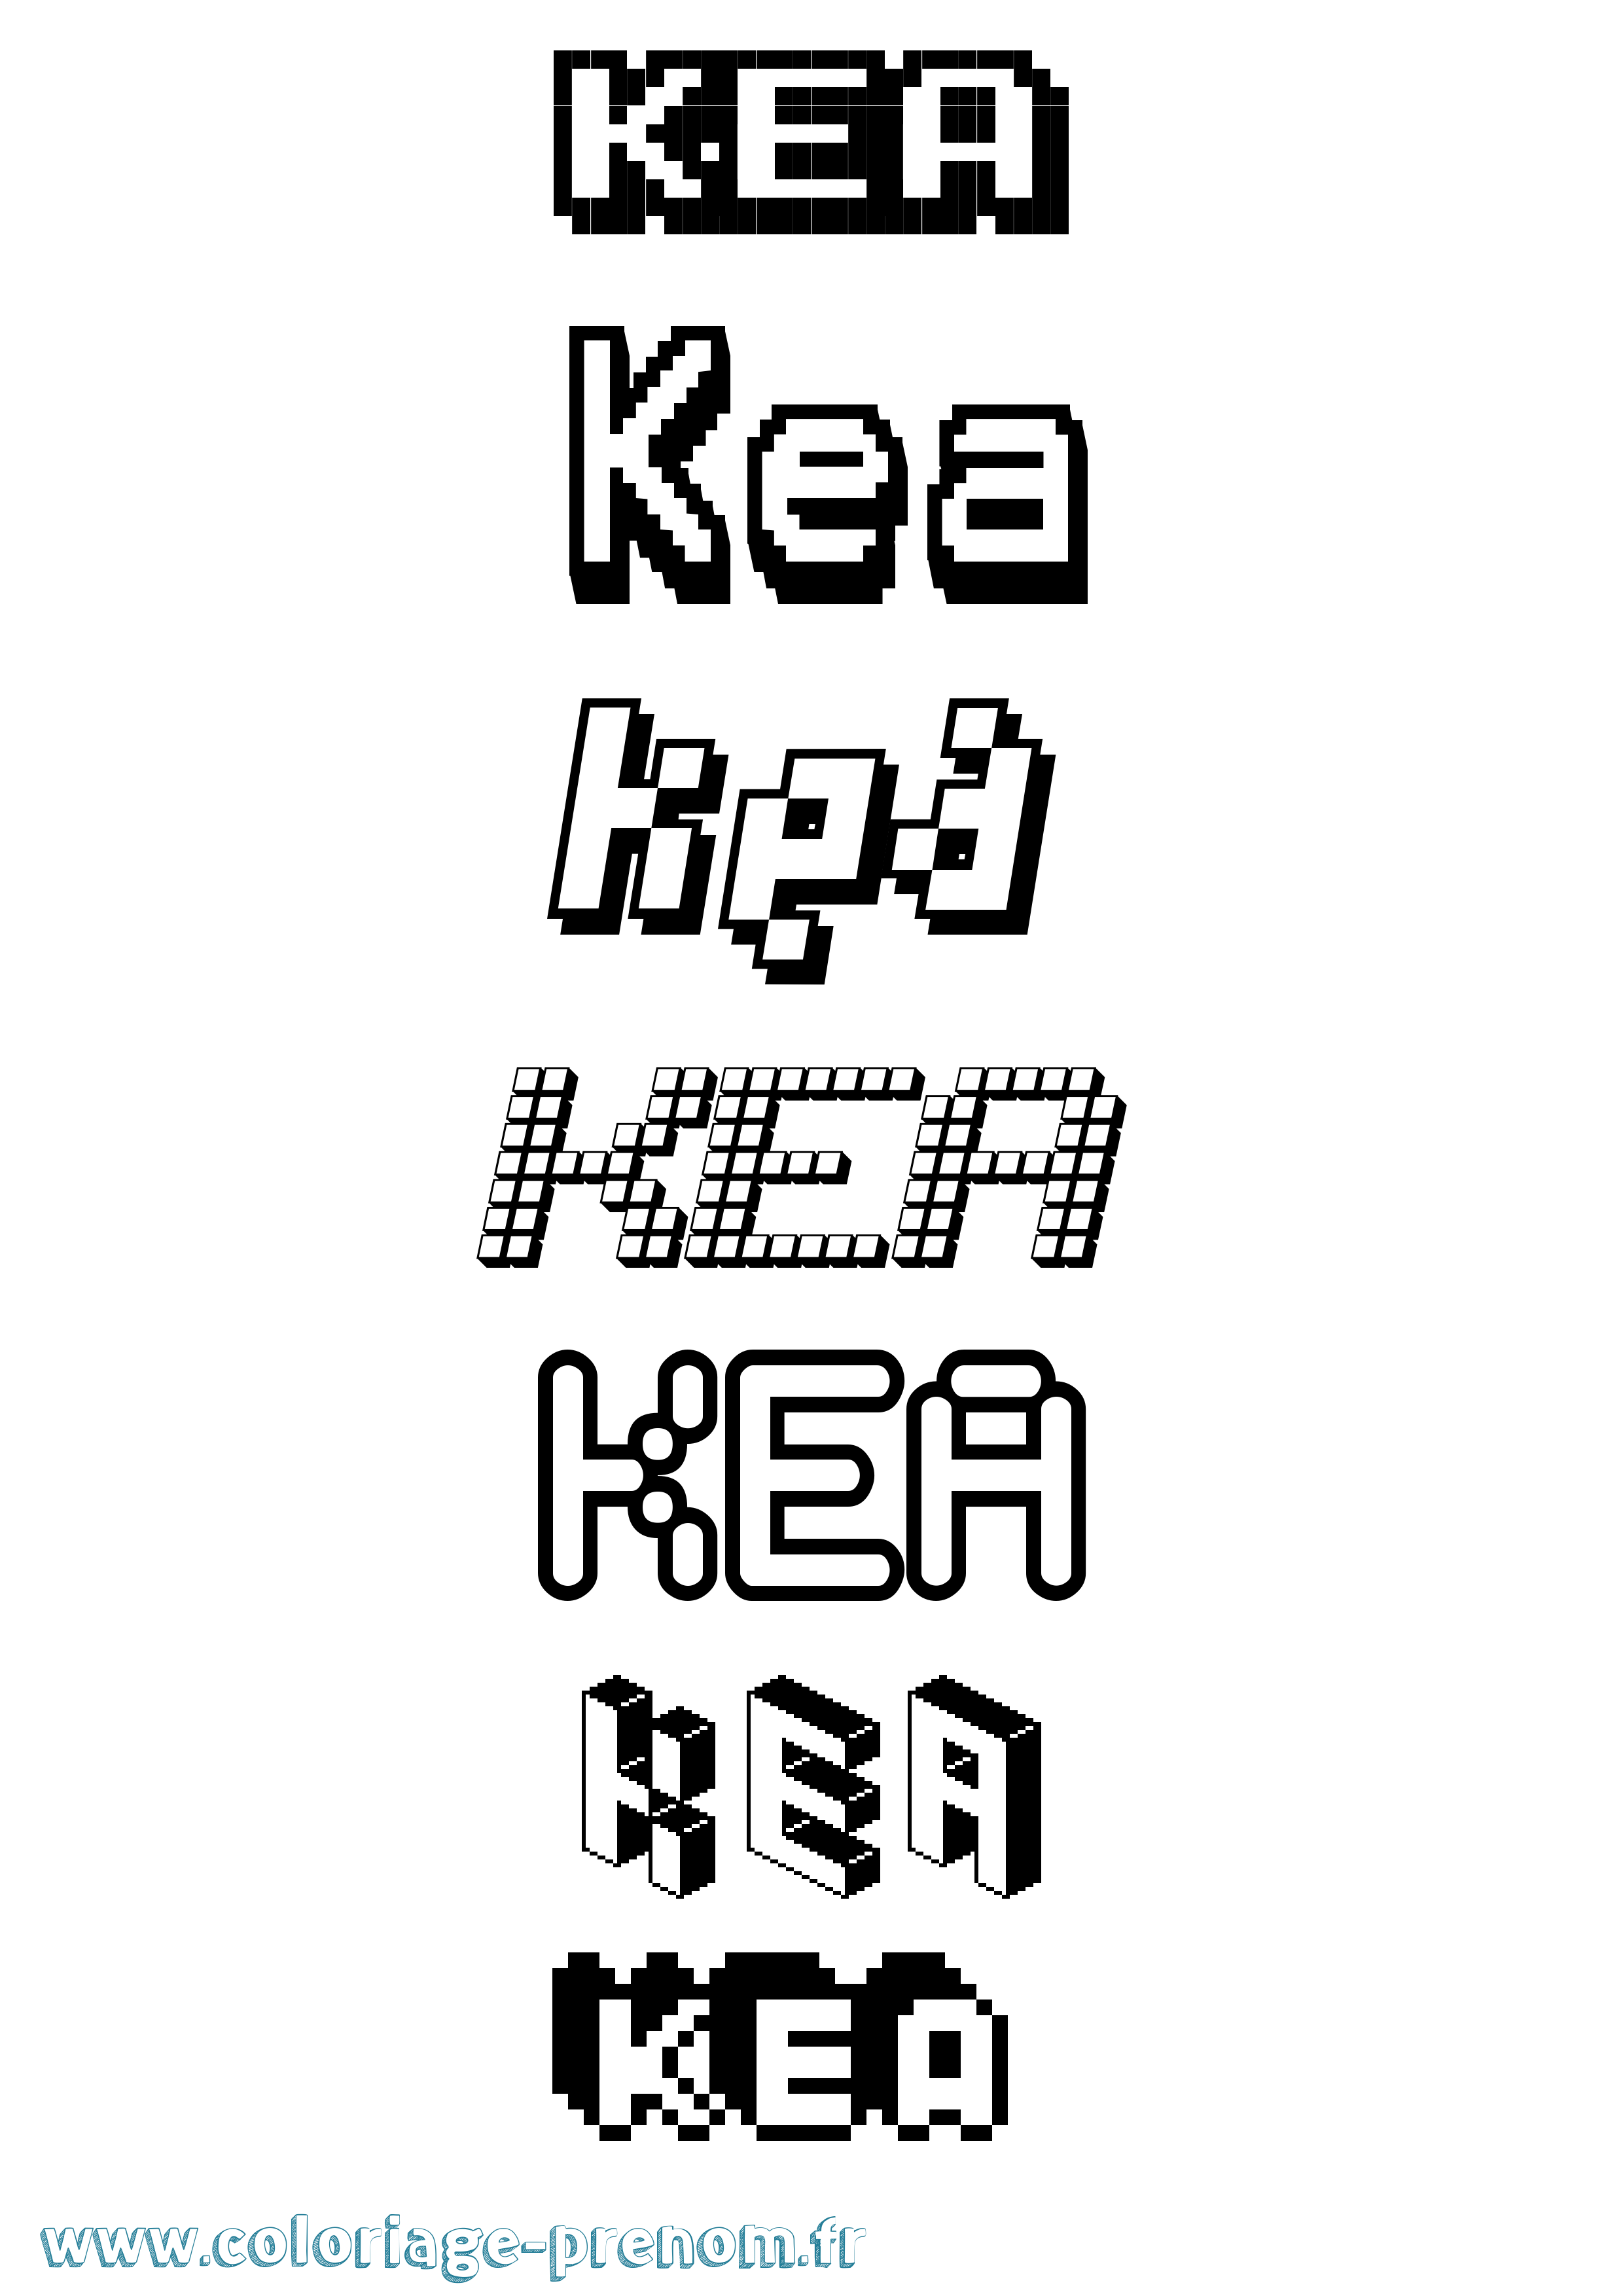 Coloriage prénom Kea Pixel